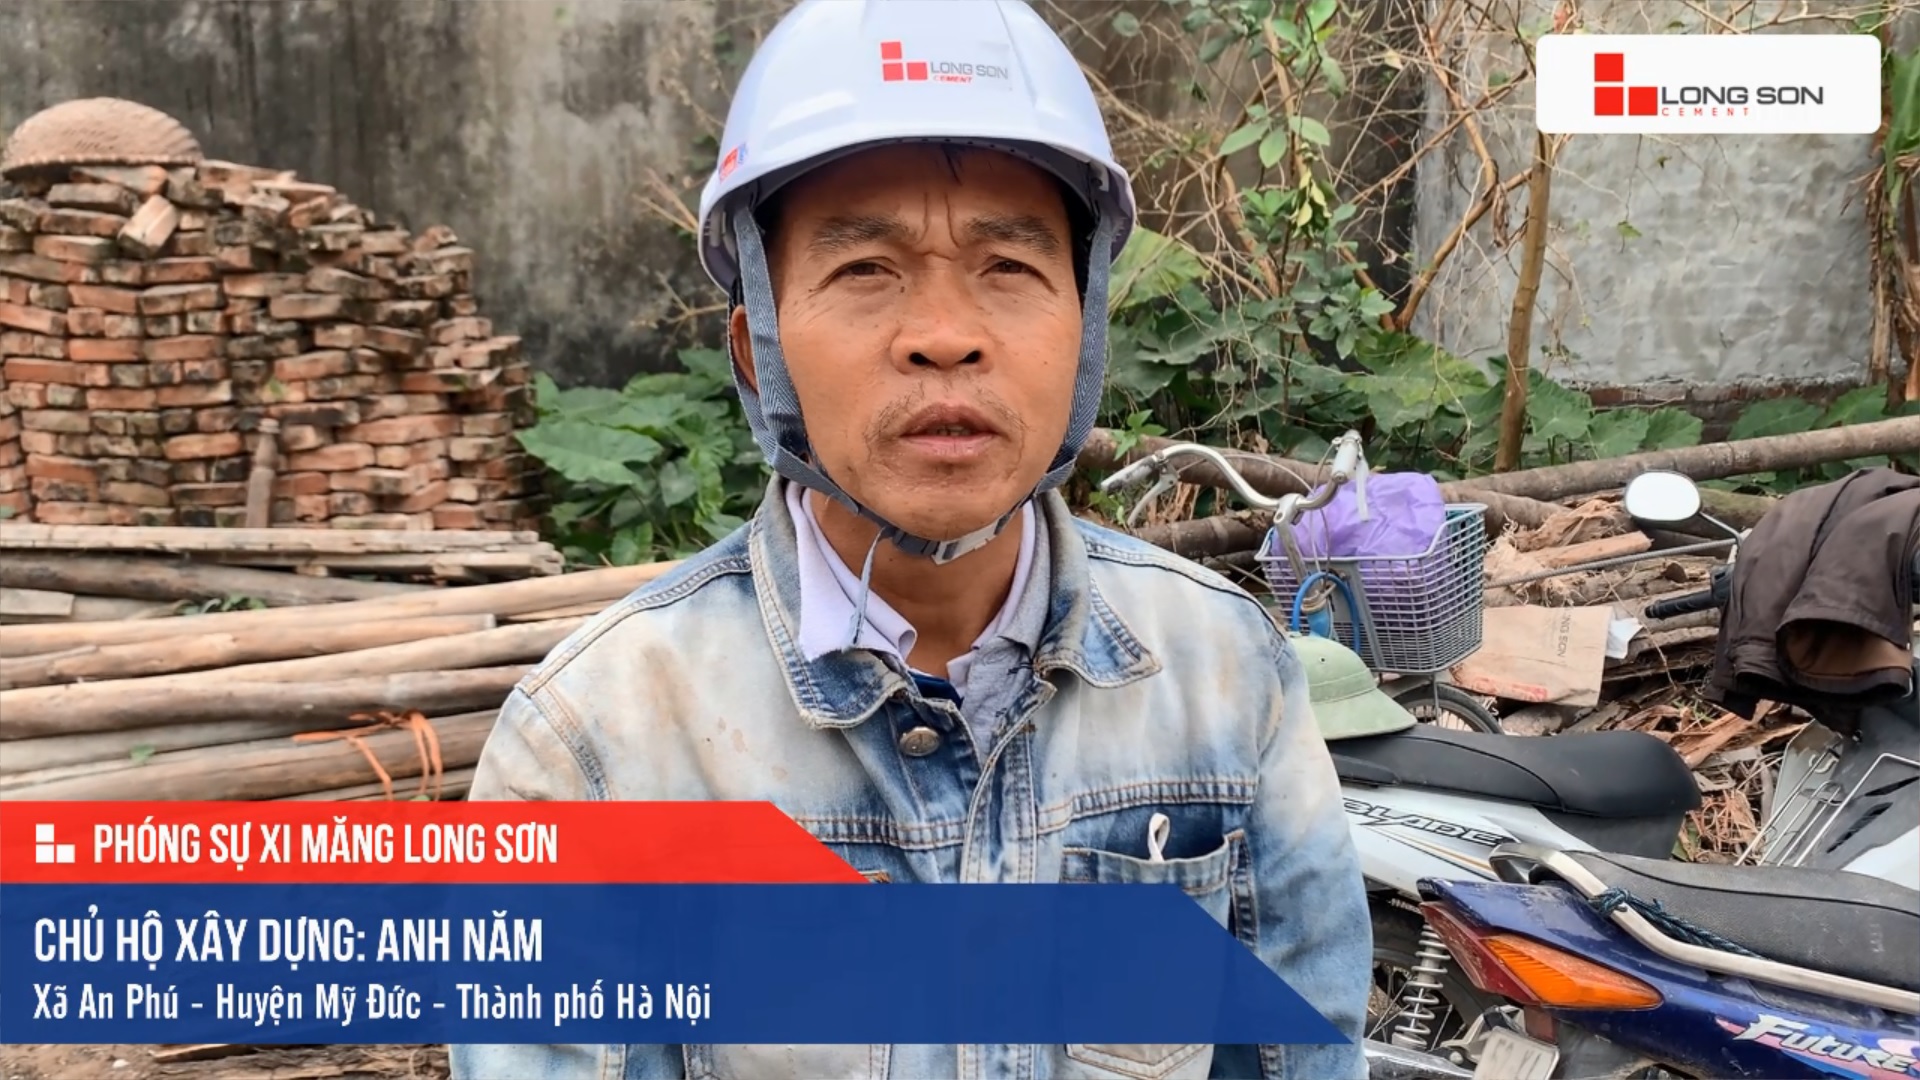 Phóng sự công trình sử dụng Xi măng Long Sơn tại Hà Nội 13.12.2020